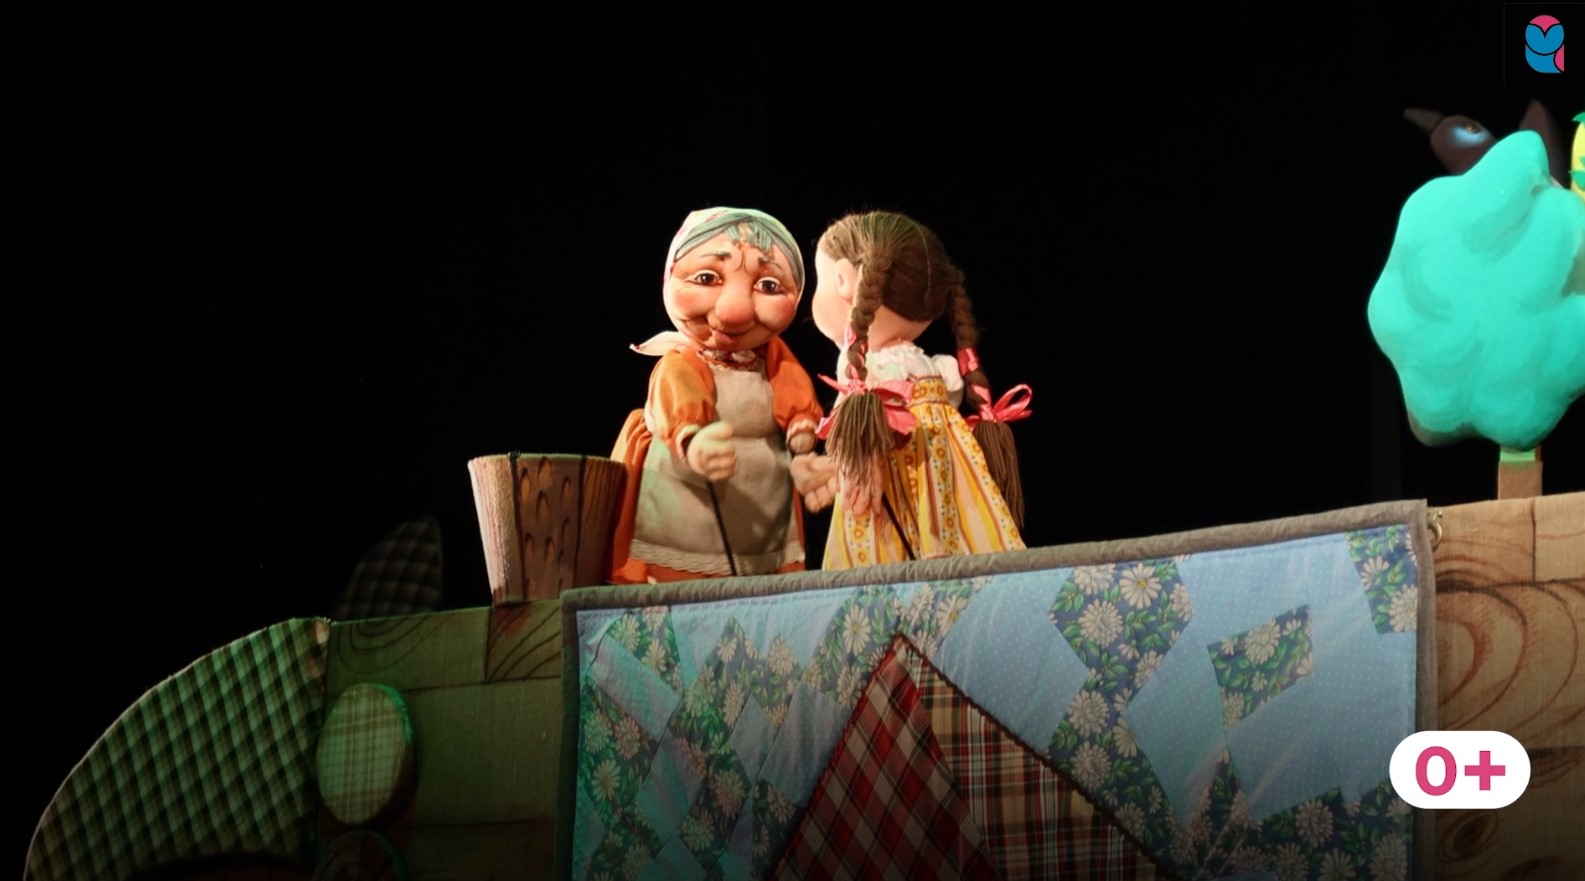 В Тольятти показали премьеру кукольного спектакля "Три медведя"